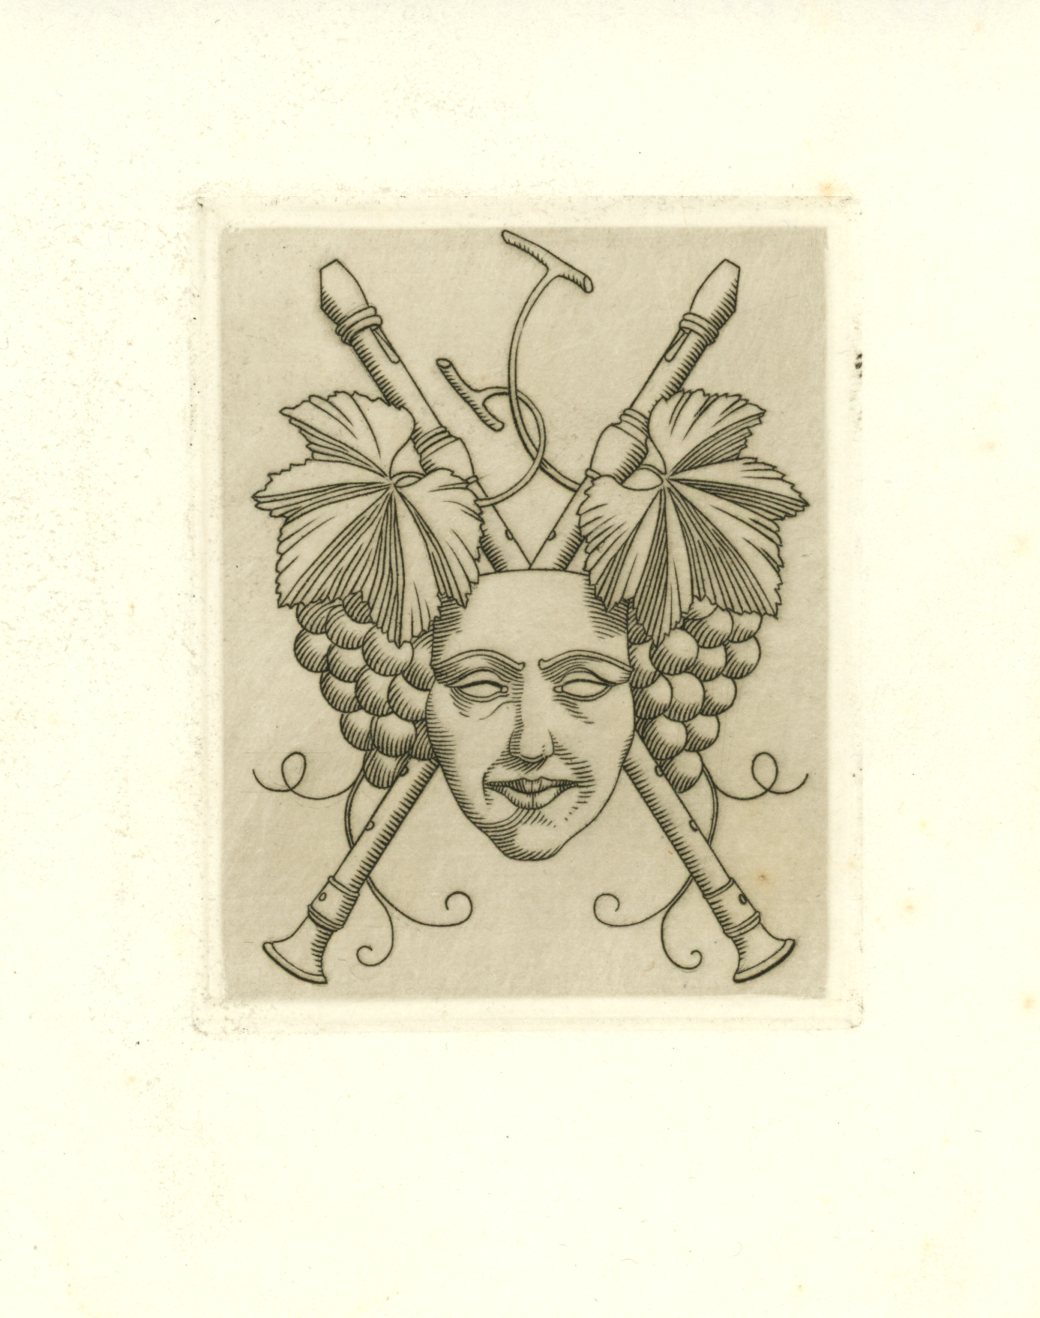 Image of engraving